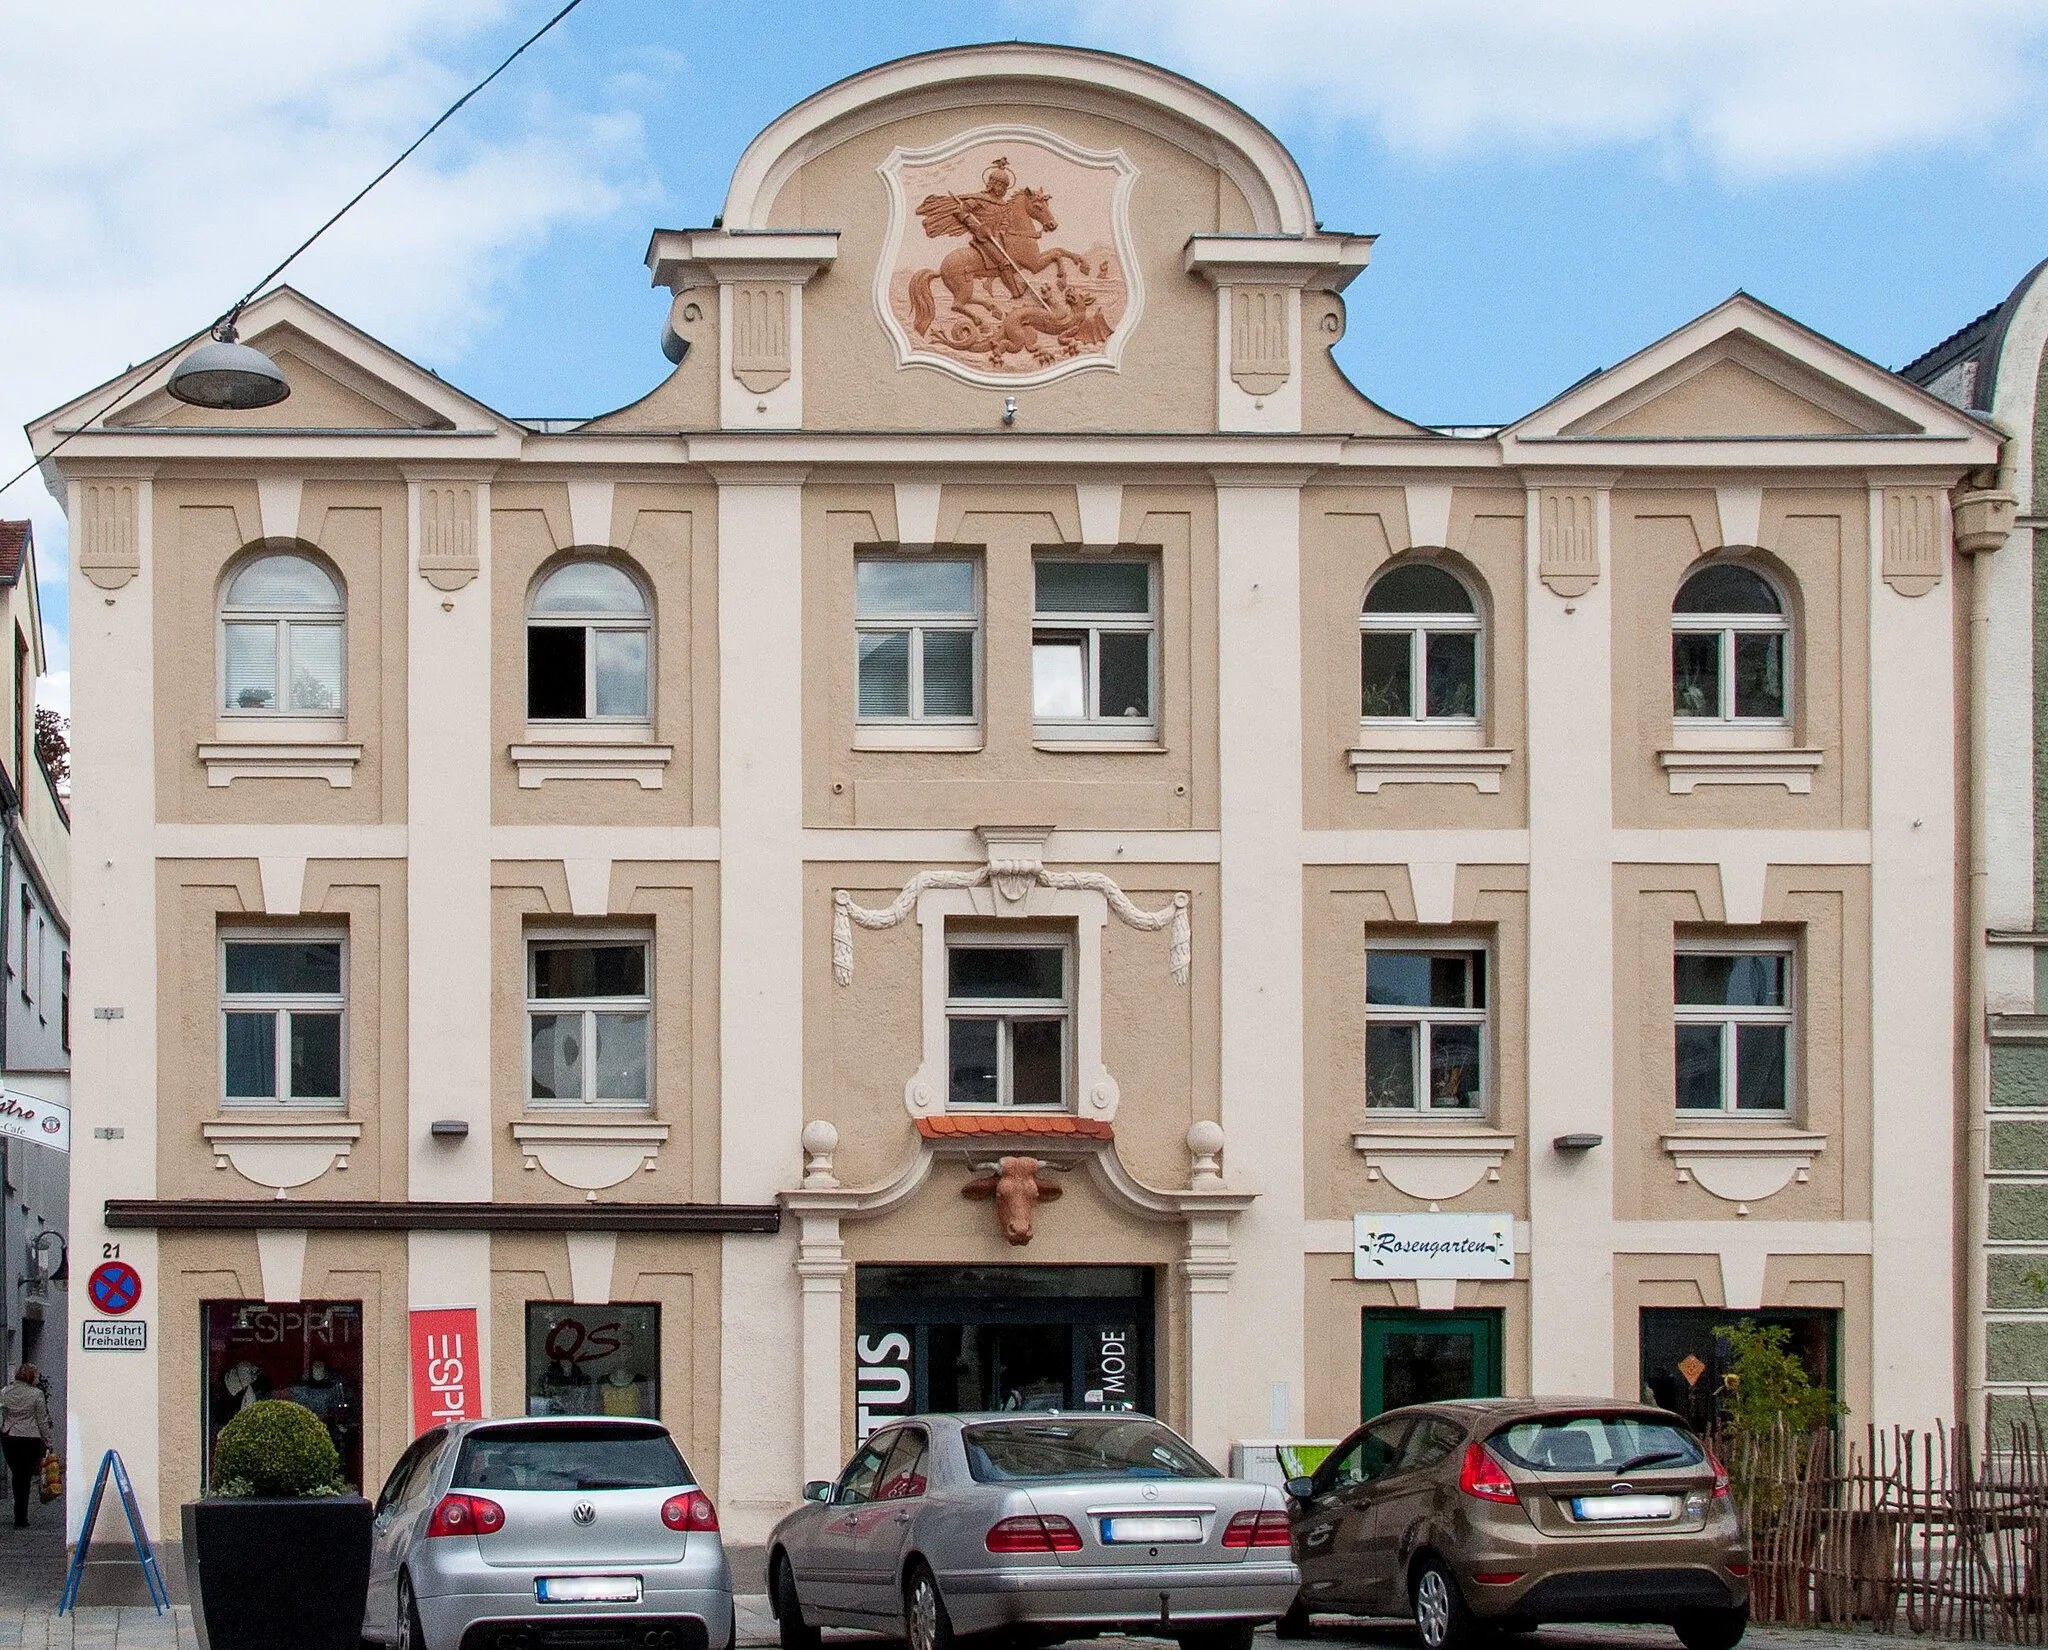 Photo showing: Bürgerhaus, Wohn- und Geschäftsgebäude, dreigeschossiger Flachdachbau mit Blendgiebeln und Relief des Hl. Georg, 18./19. Jahrhundert, neubarocke Fassade von 1904.